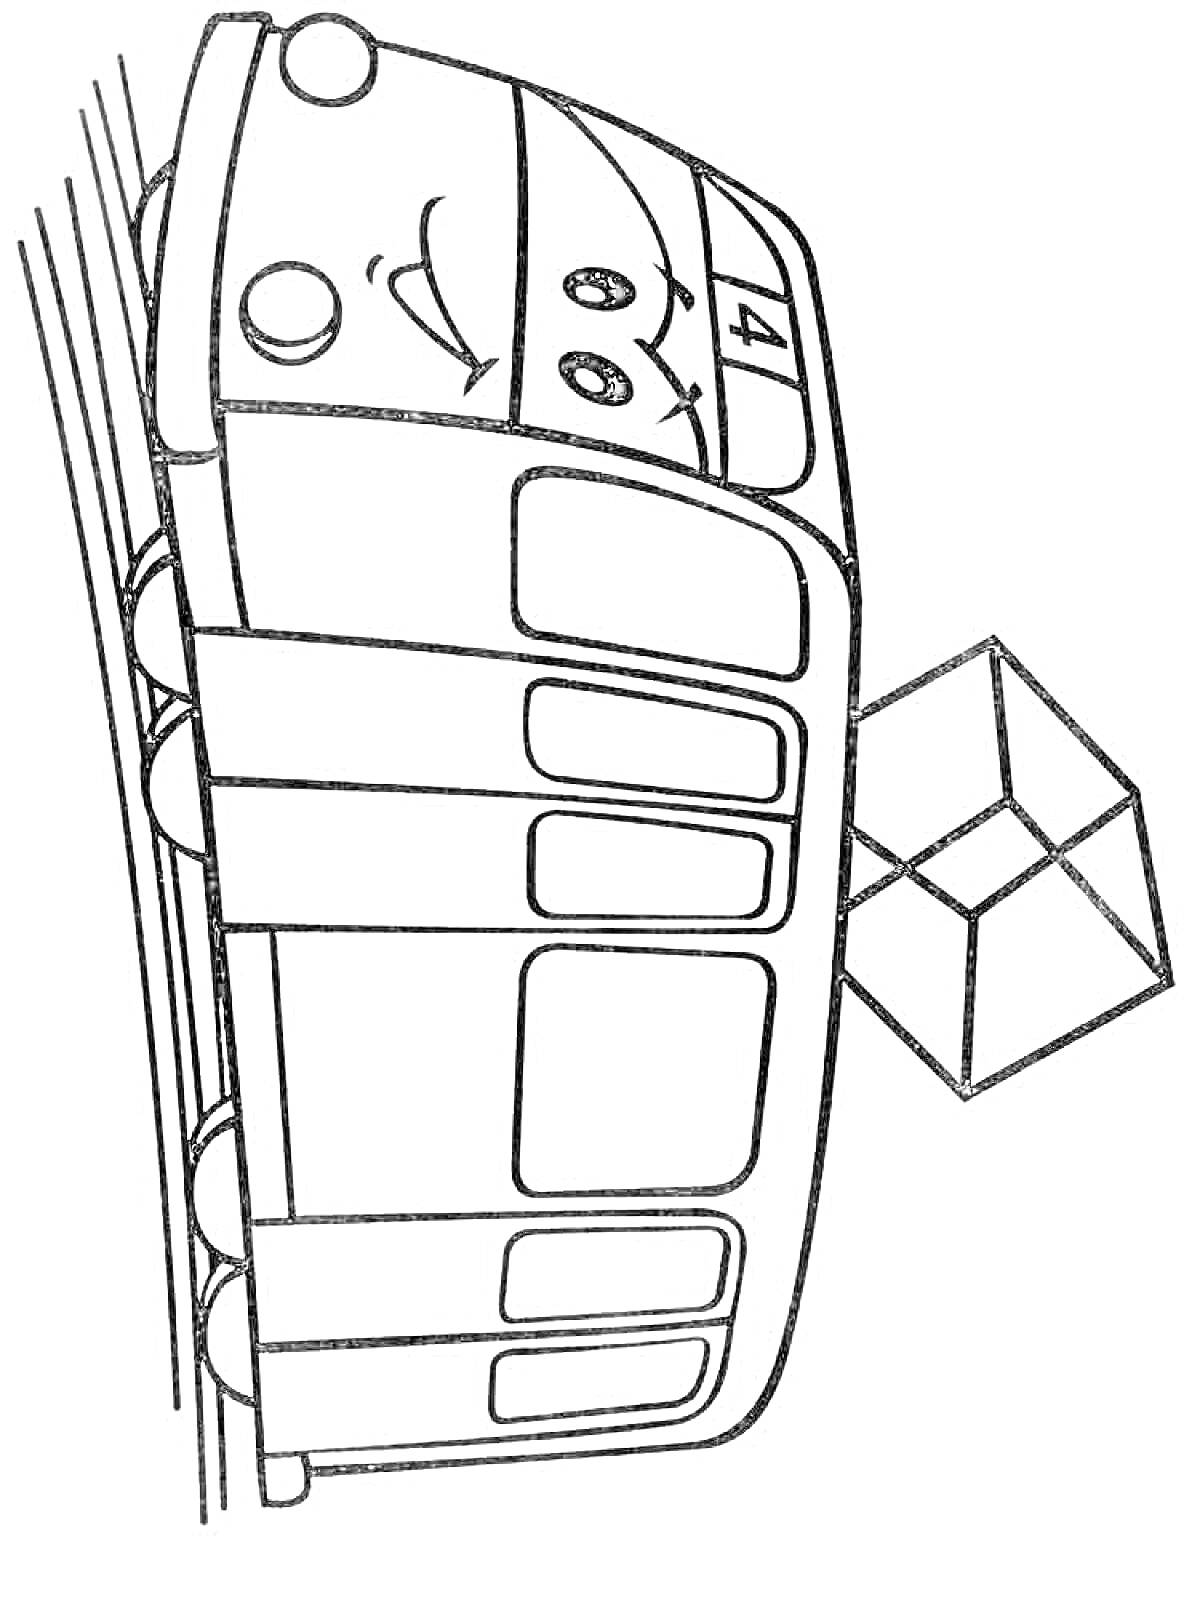 Раскраска Трамвай с улыбкой, едущий по рельсам, с цифрой 4 на кабине и кубиком сбоку